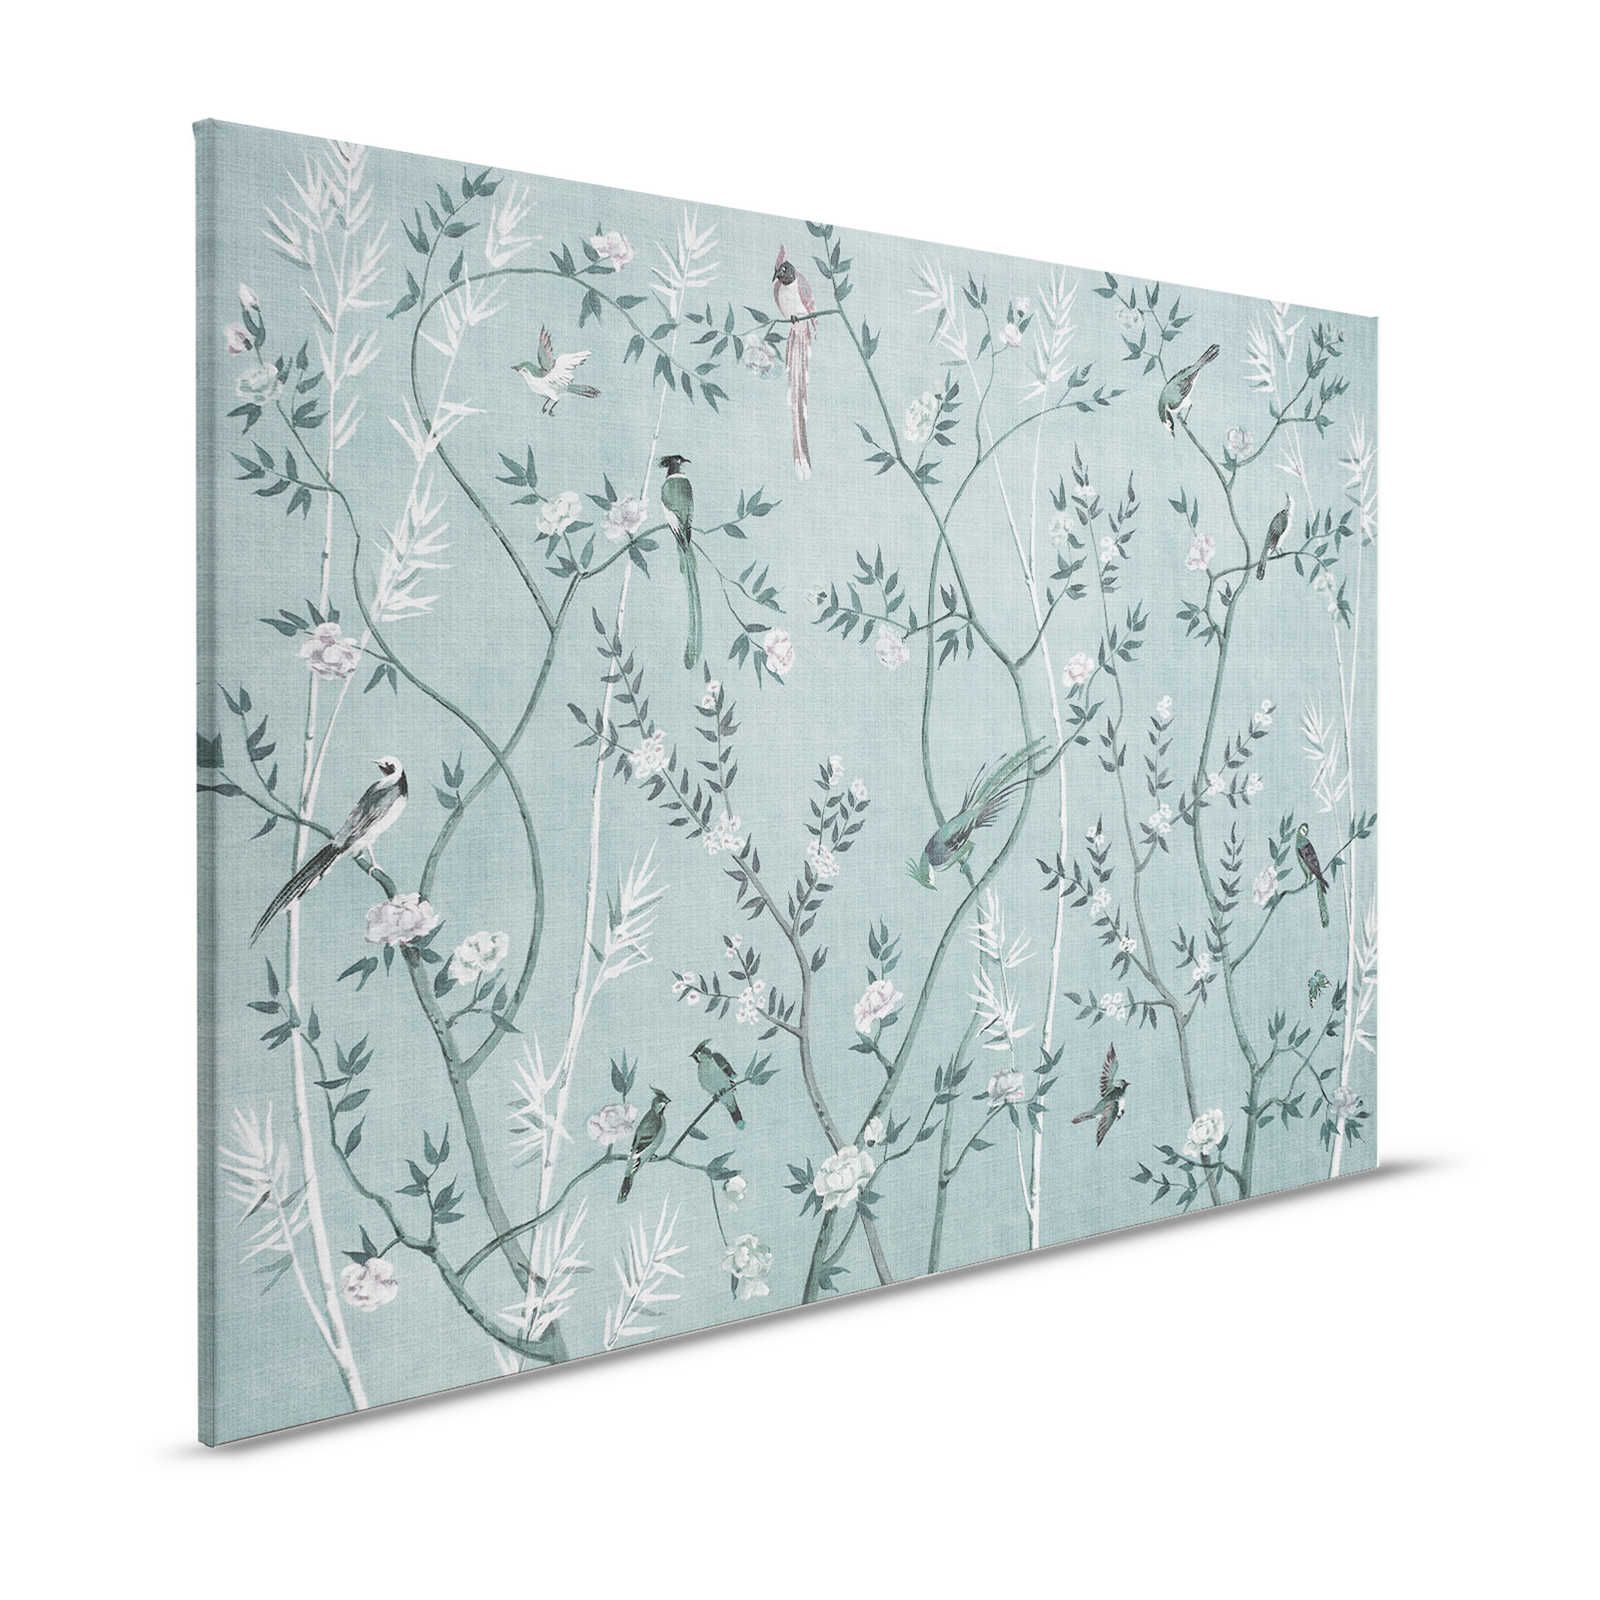 Tea Room 1 - Leinwandbild Vögel & Blüten Design in Petrol & Weiß – 1,20 m x 0,80 m
